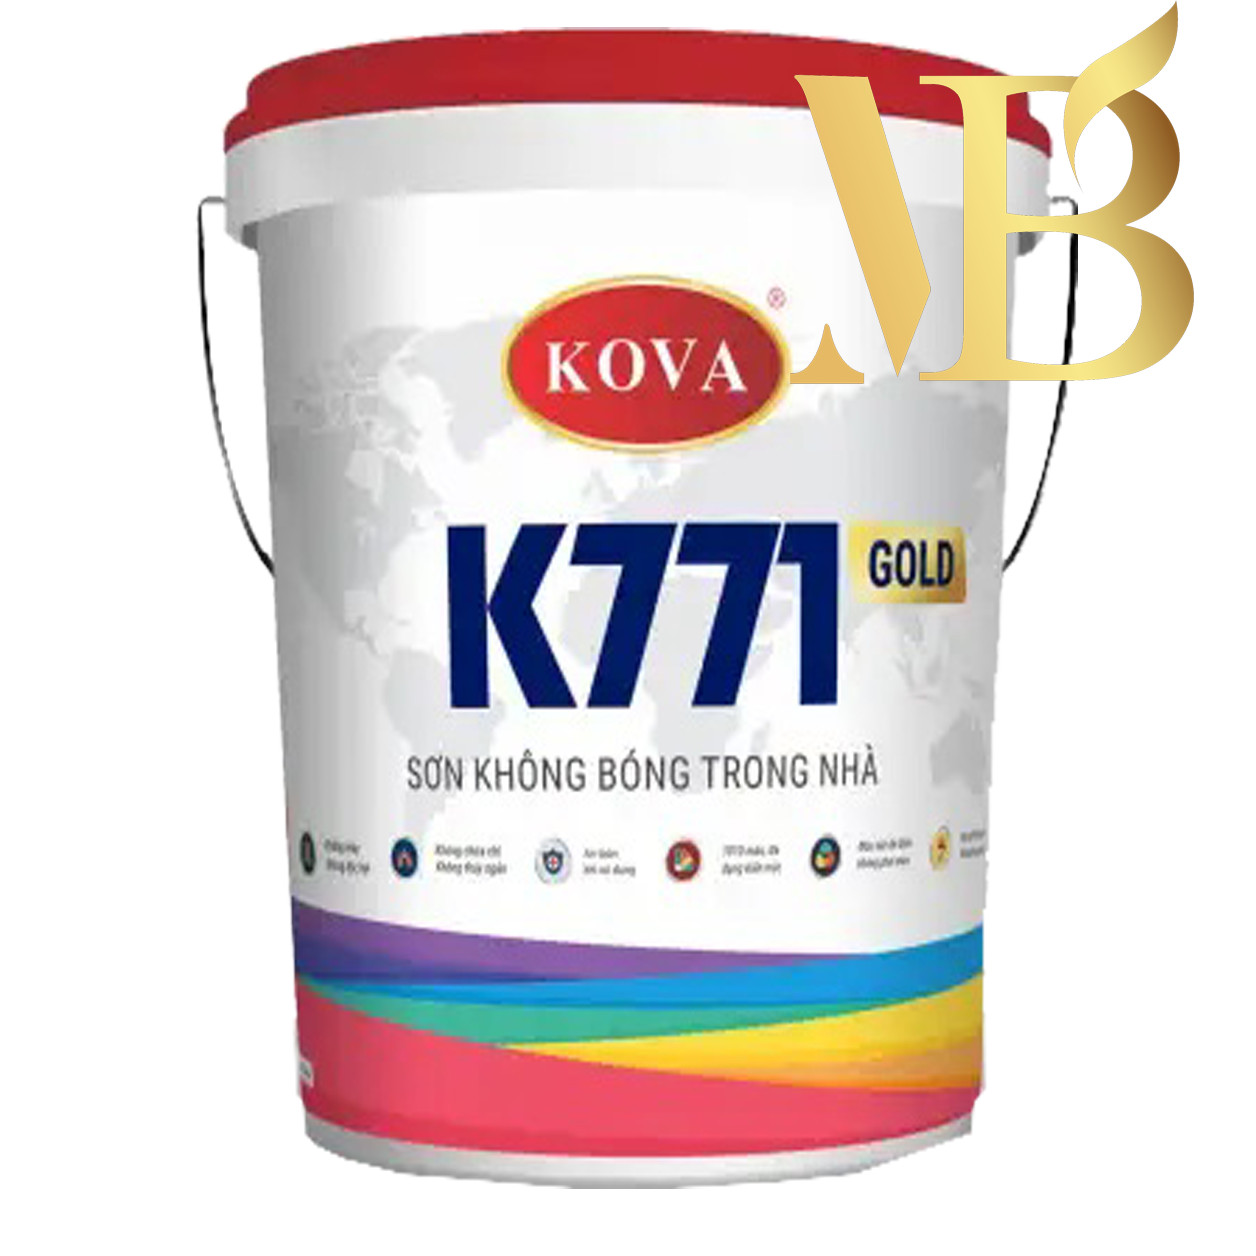 Sơn nội thất không bóng Kova K-771: Một loại sơn đặc biệt khiến cho bề mặt của bạn trông tuyệt vời mà không có hiệu ứng bóng. Sản phẩm sơn nội thất không bóng Kova K-771 mang lại cho ngôi nhà của bạn một nét sang trọng và tinh tế, sức sống và sự độc đáo.